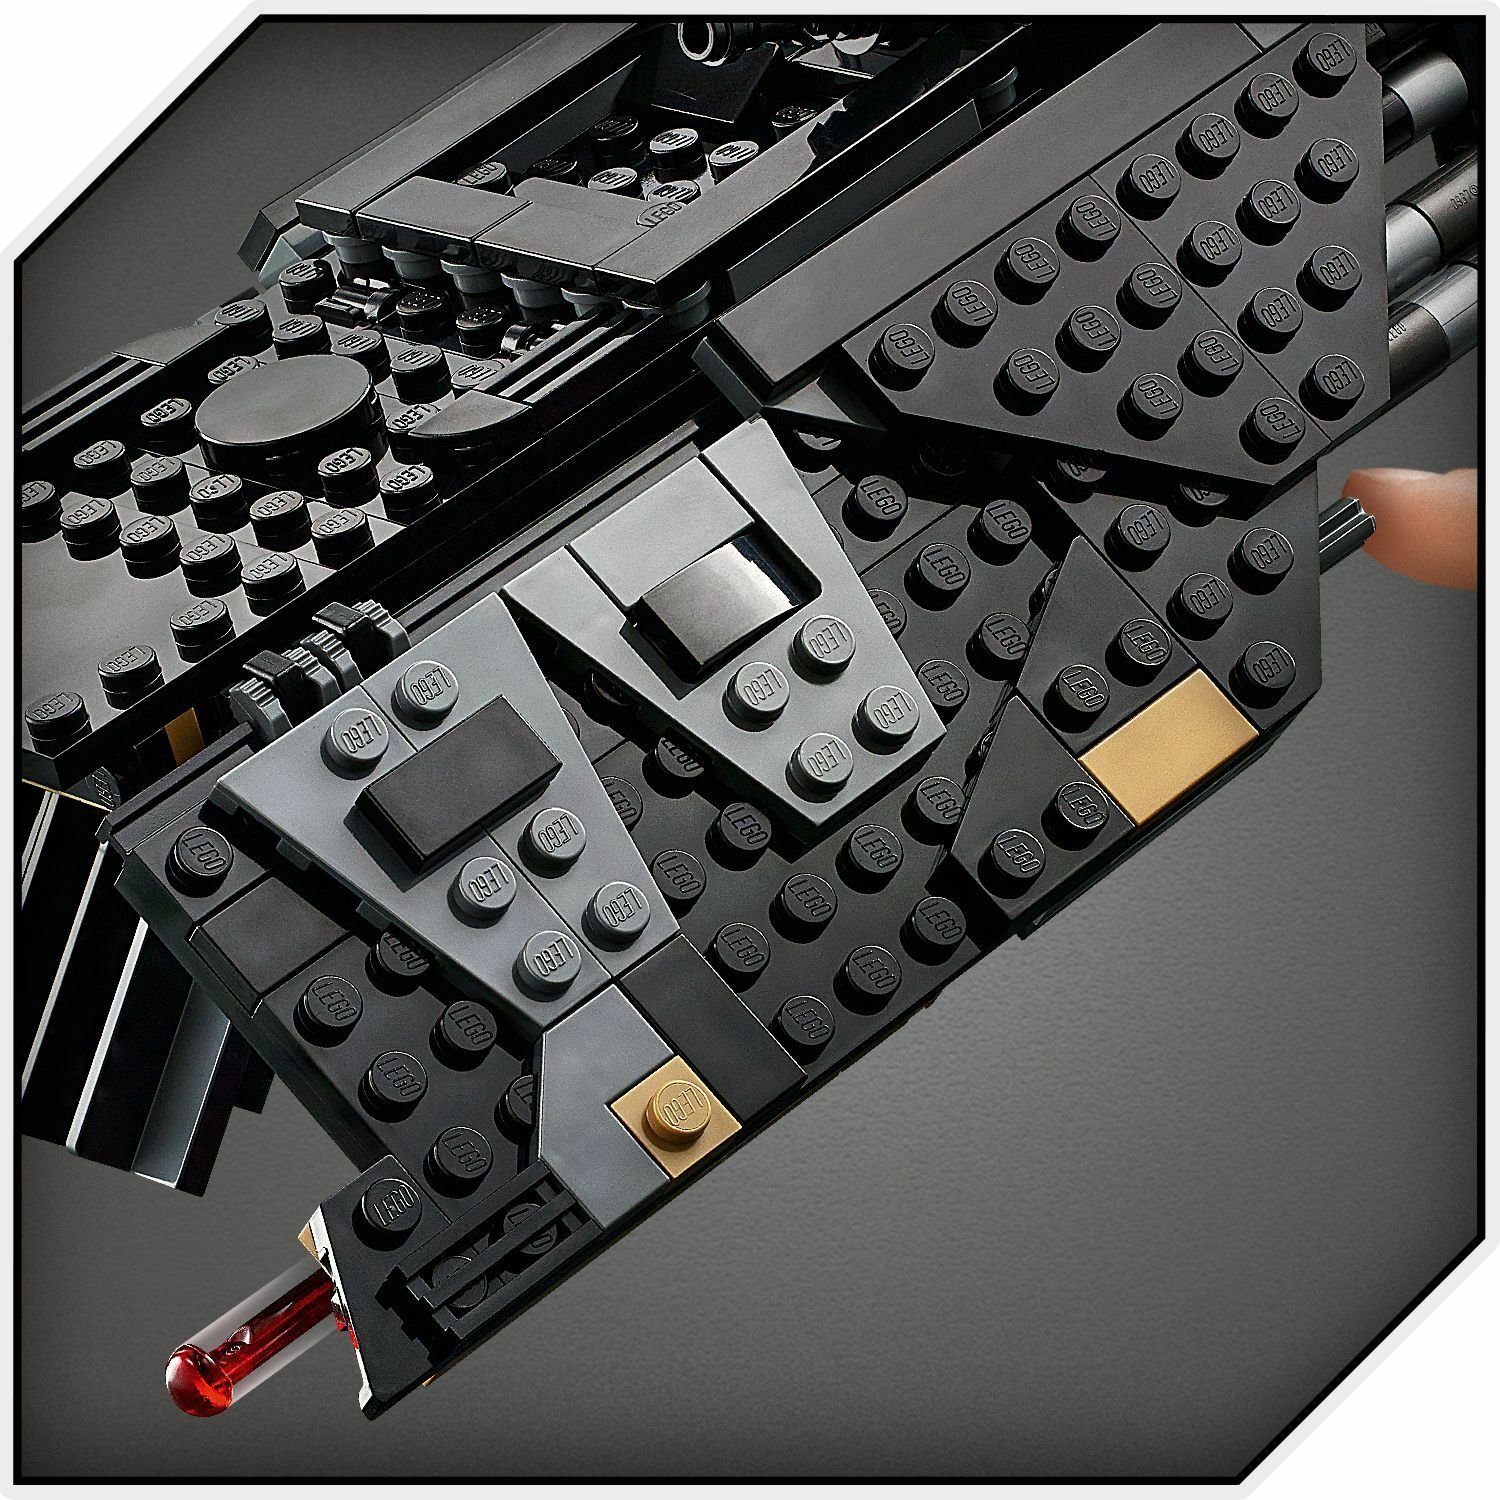 Lego Star Wars 75284 Транспортный корабль рыцарей Рена